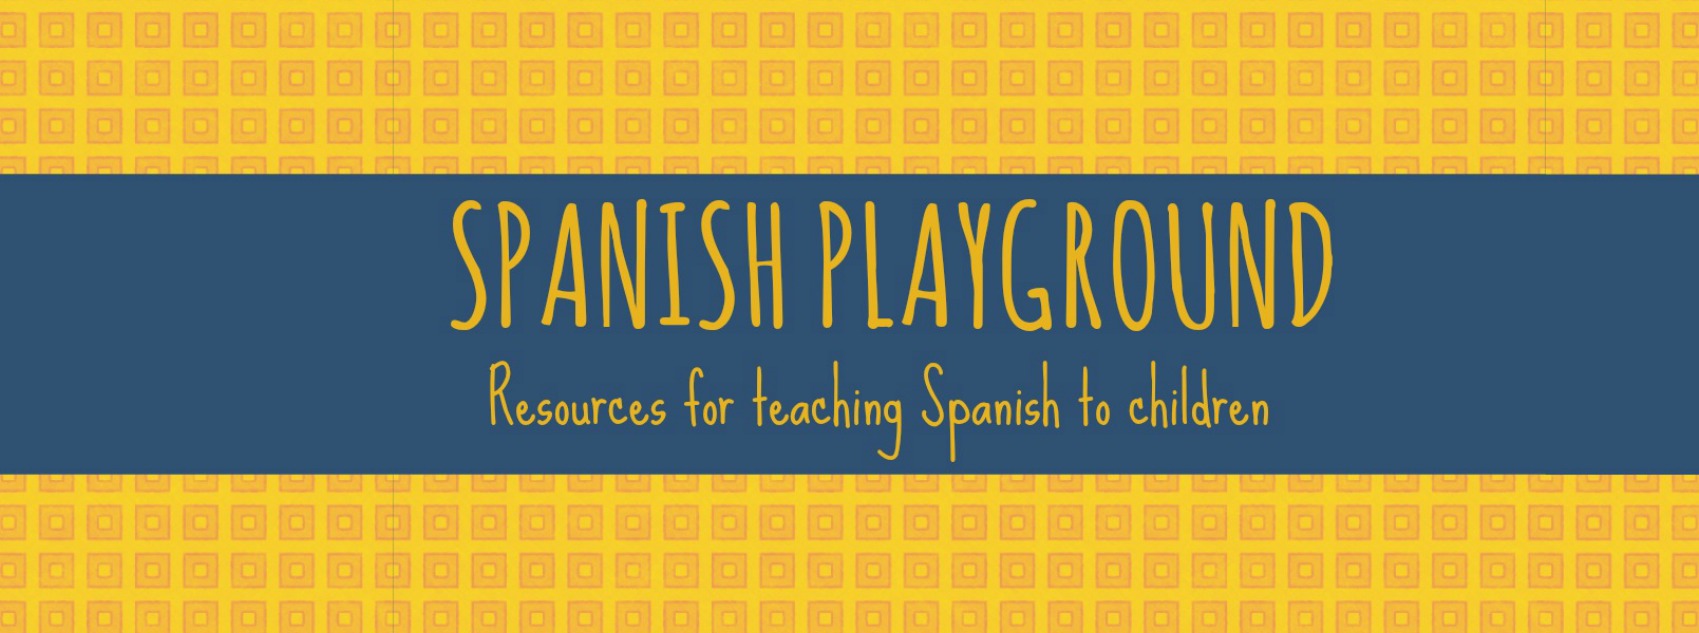 “5 aplicaciones para practicar la lectura en español” – spanishplayground.net